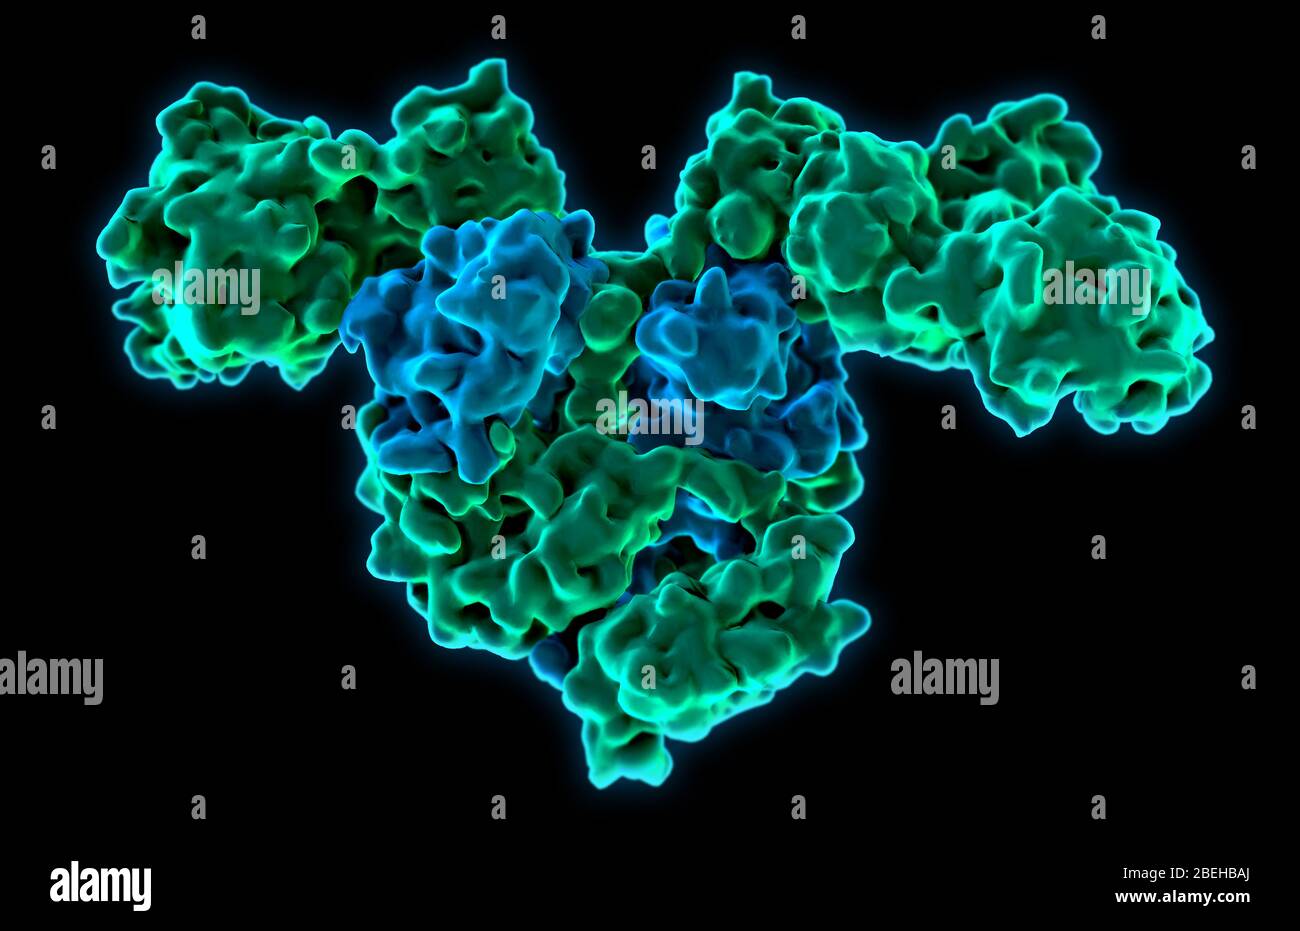 Enzima batterico immagini e fotografie stock ad alta risoluzione - Alamy